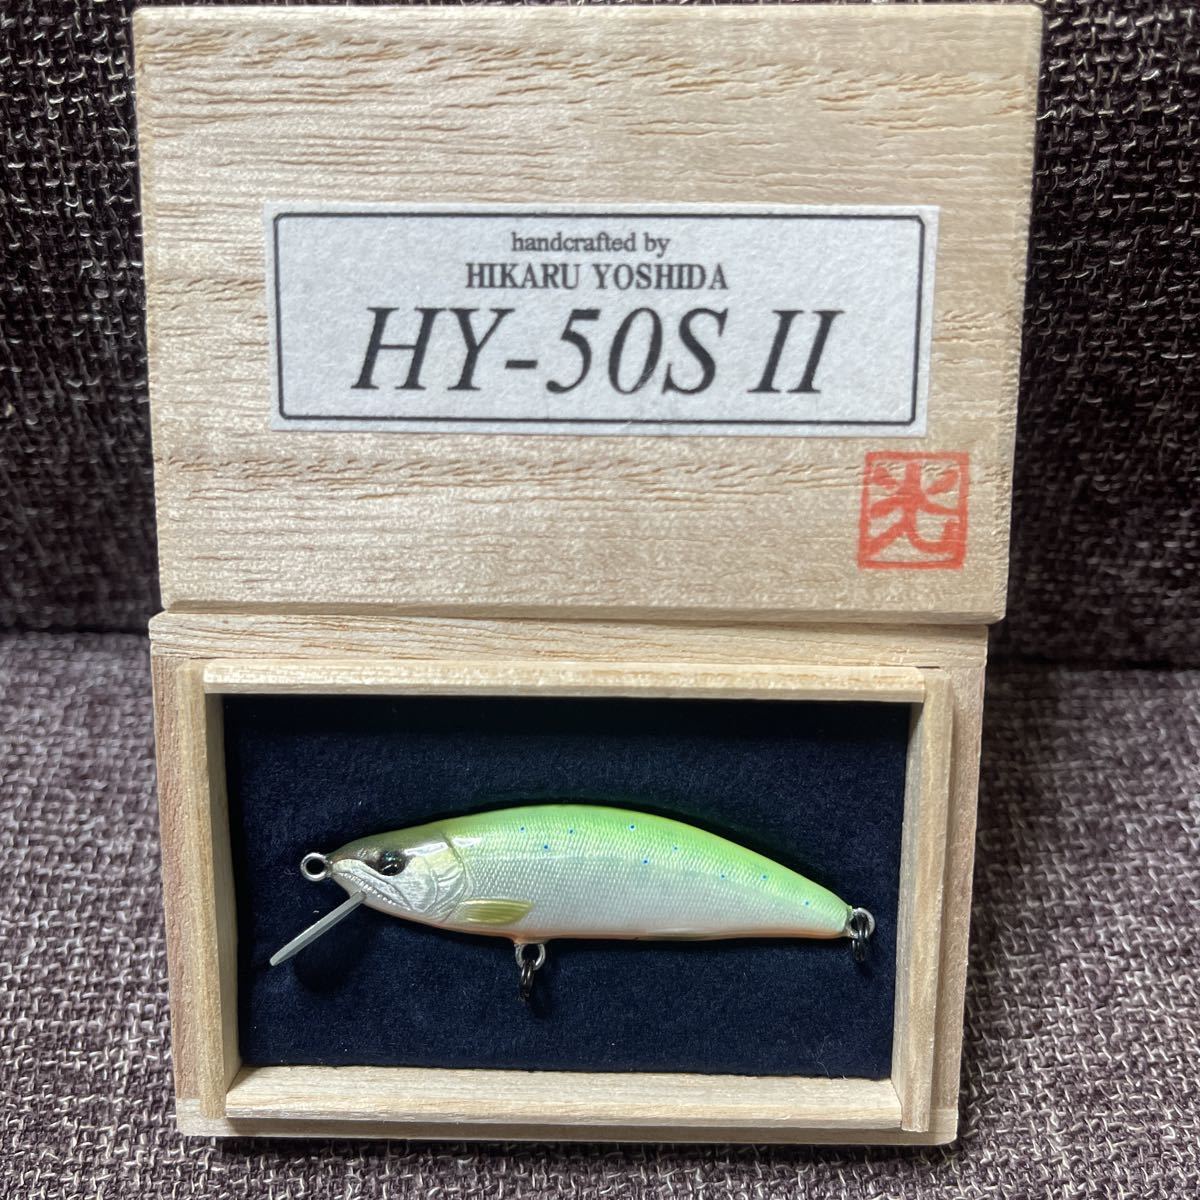 新発売 HY-50S Ⅱ 吉田光 氏ハンドメイドミノー。。。 その他